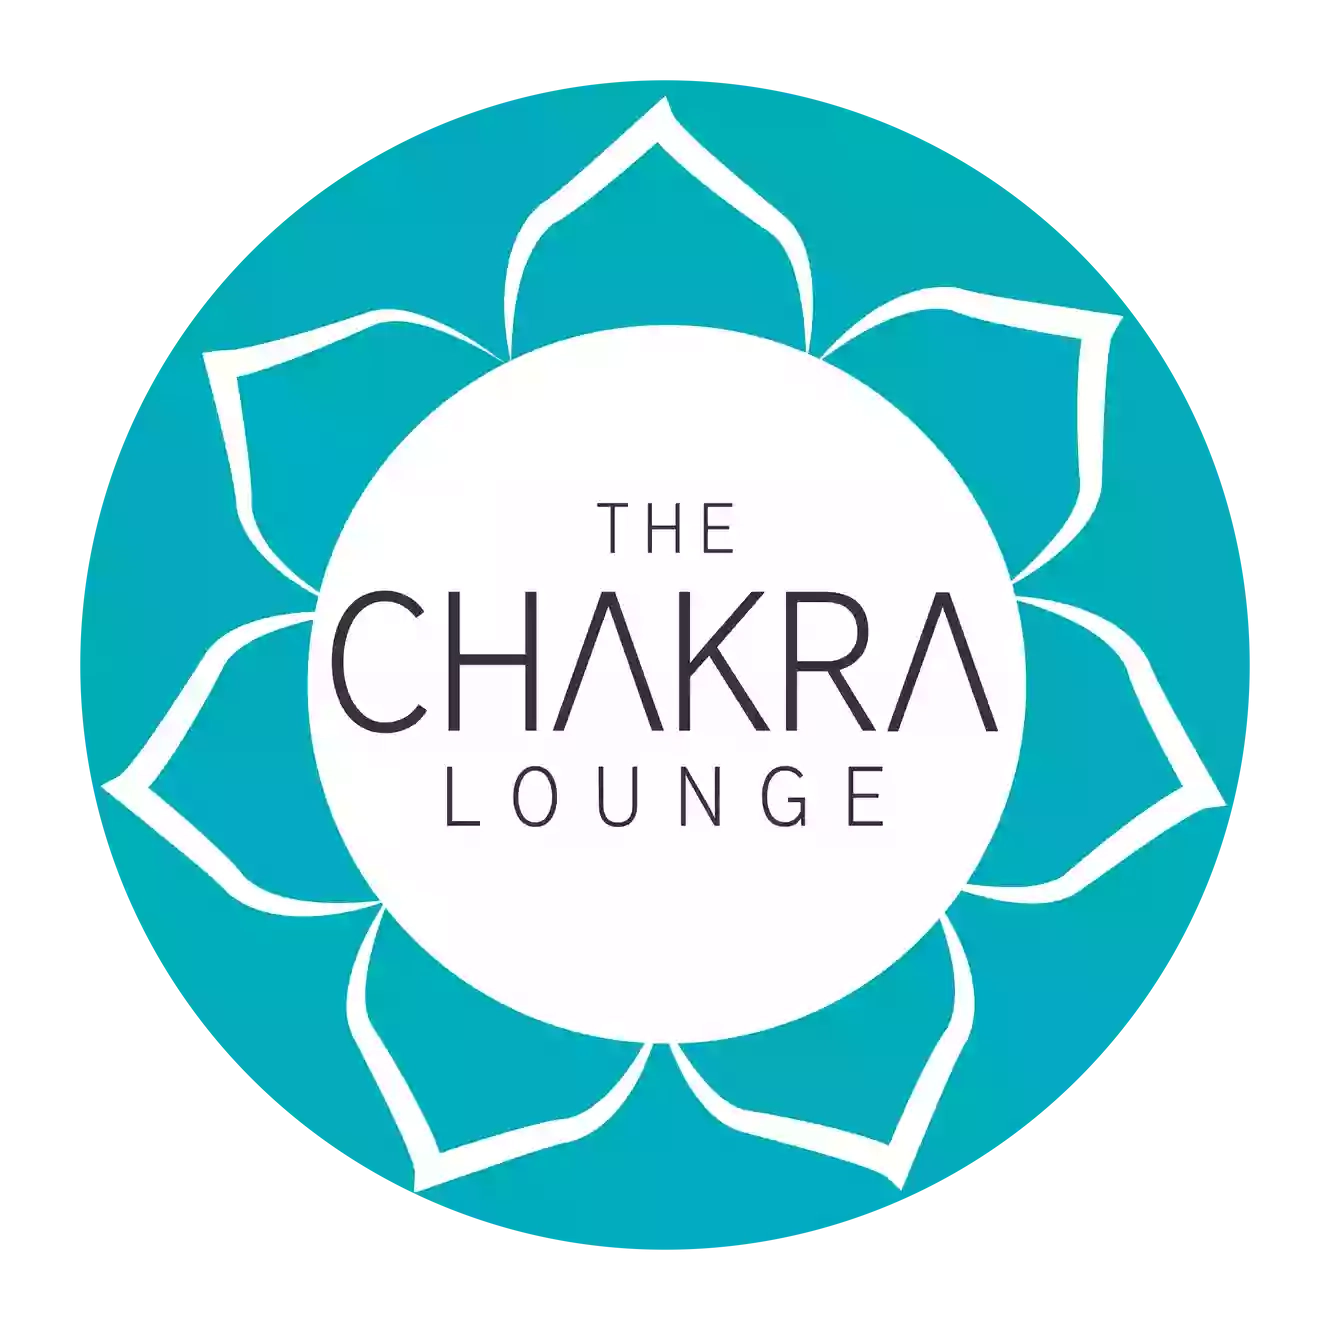 The Chakra Lounge